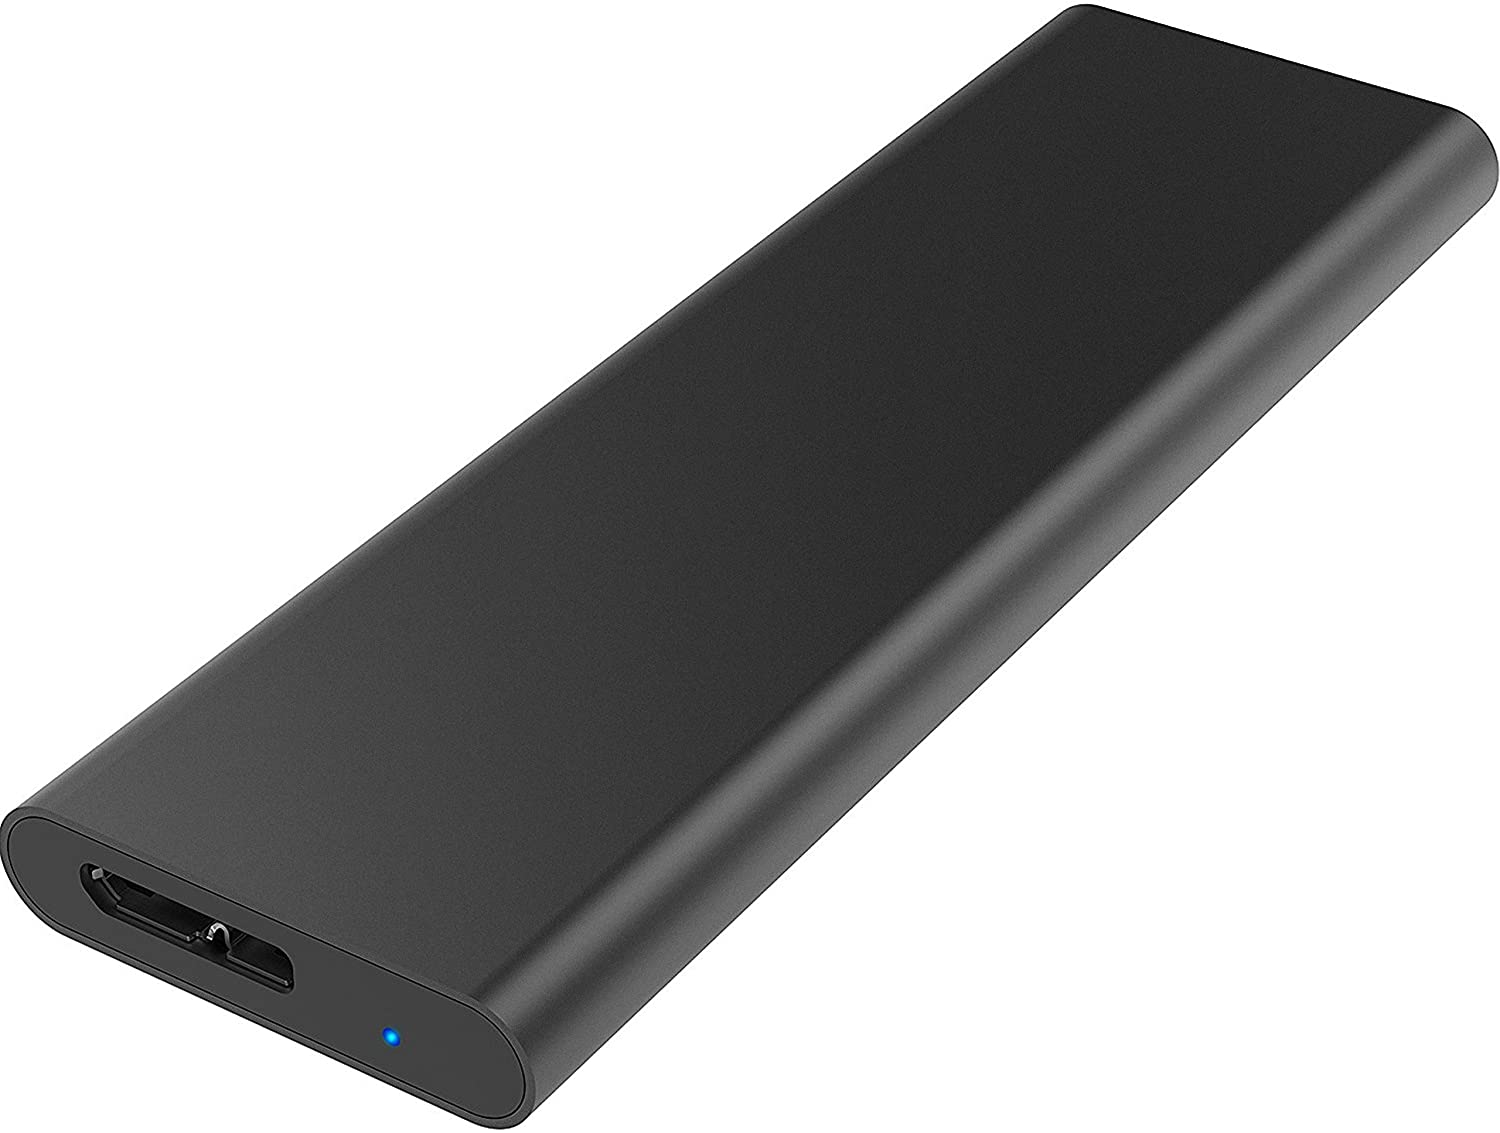 SABRENT M.2 SATA SSD to USB 3.0 Aluminum Enclosure (EC-M2MC)